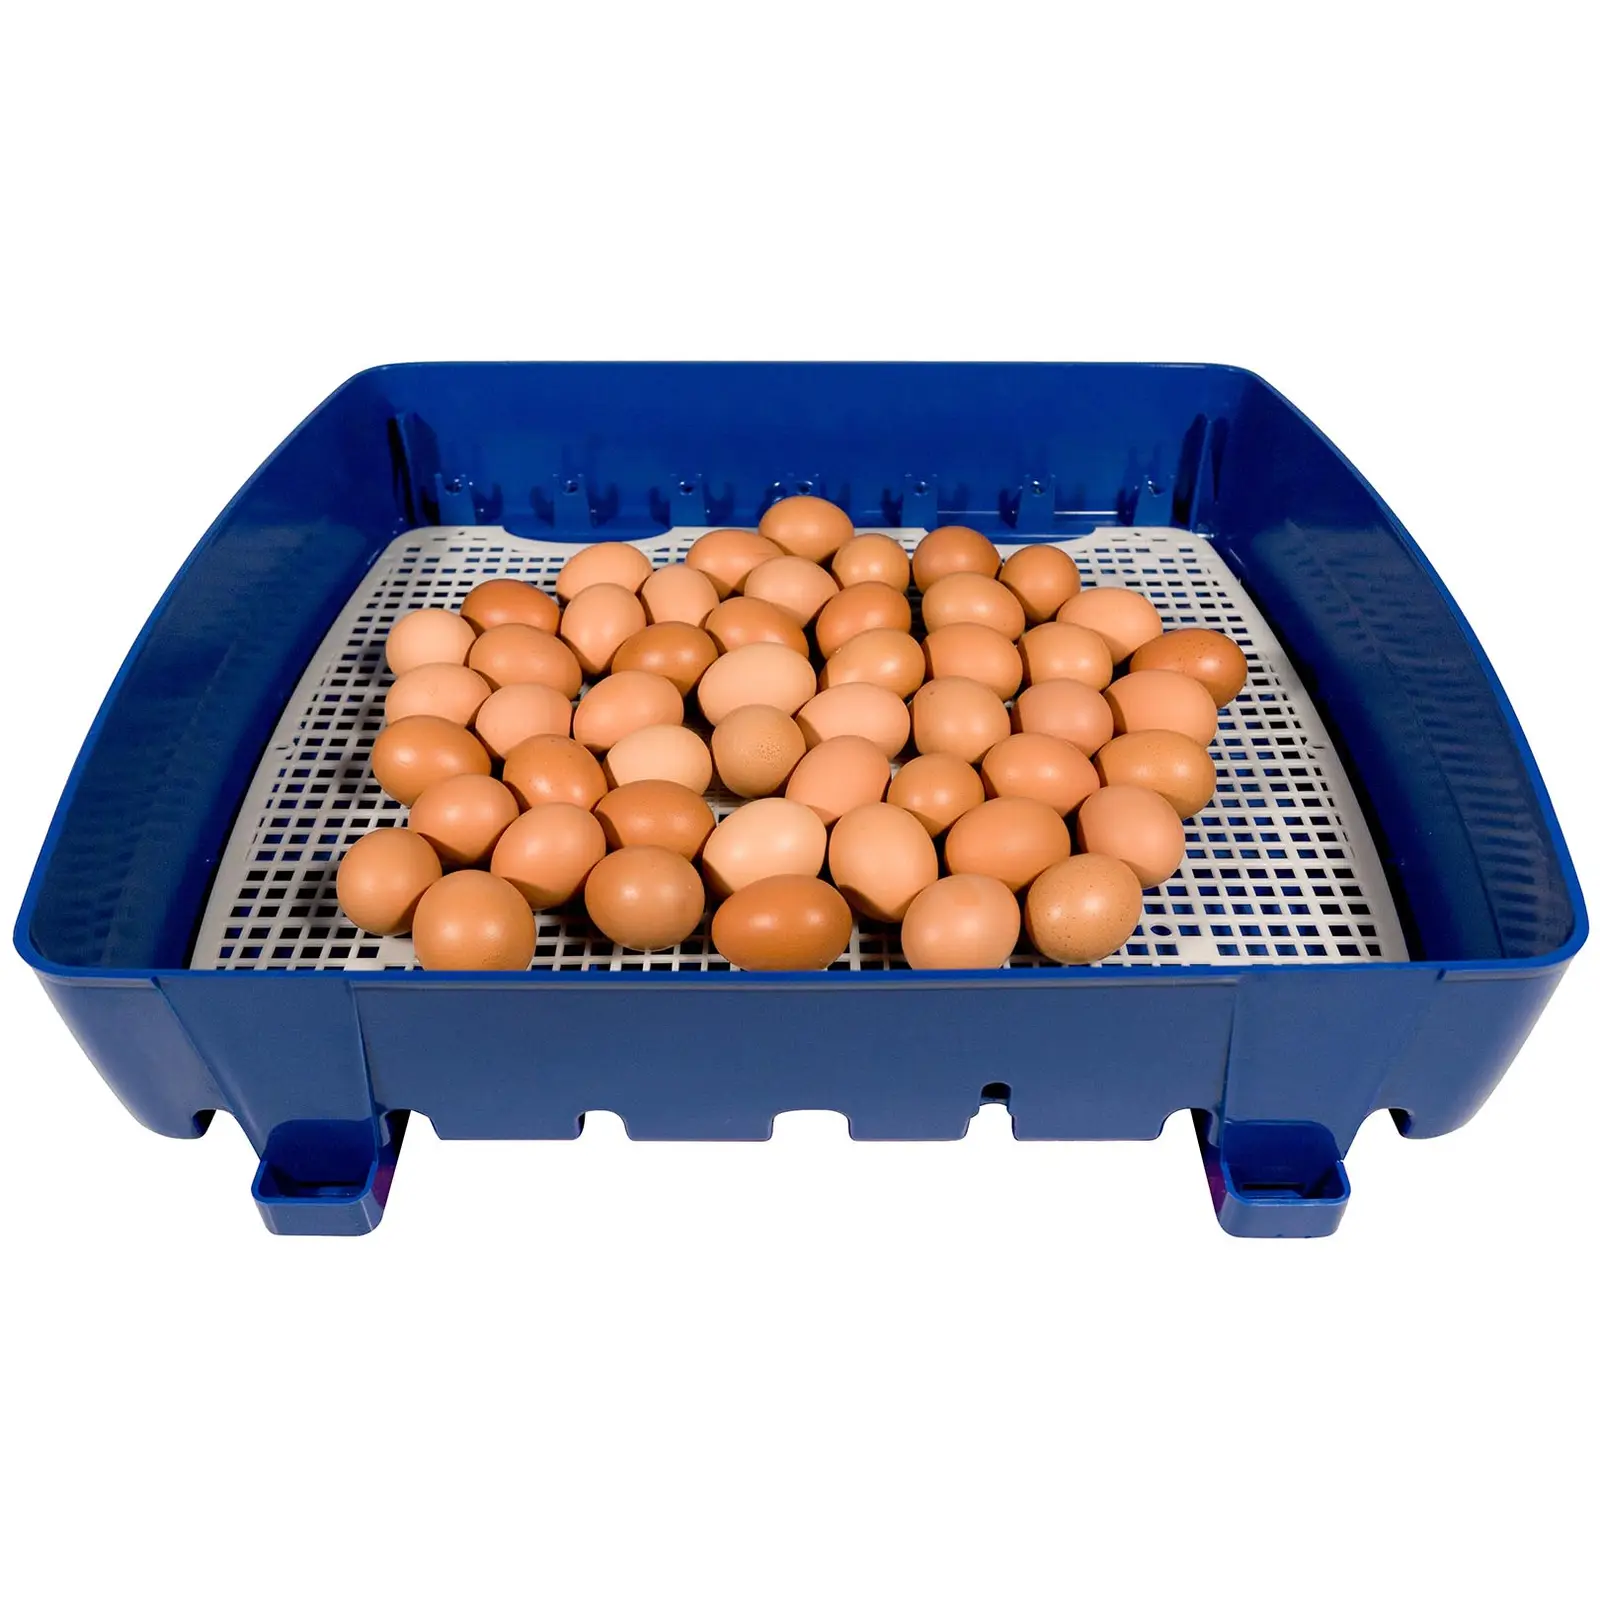 Couveuse à œufs semi-automatique - 49 œufs